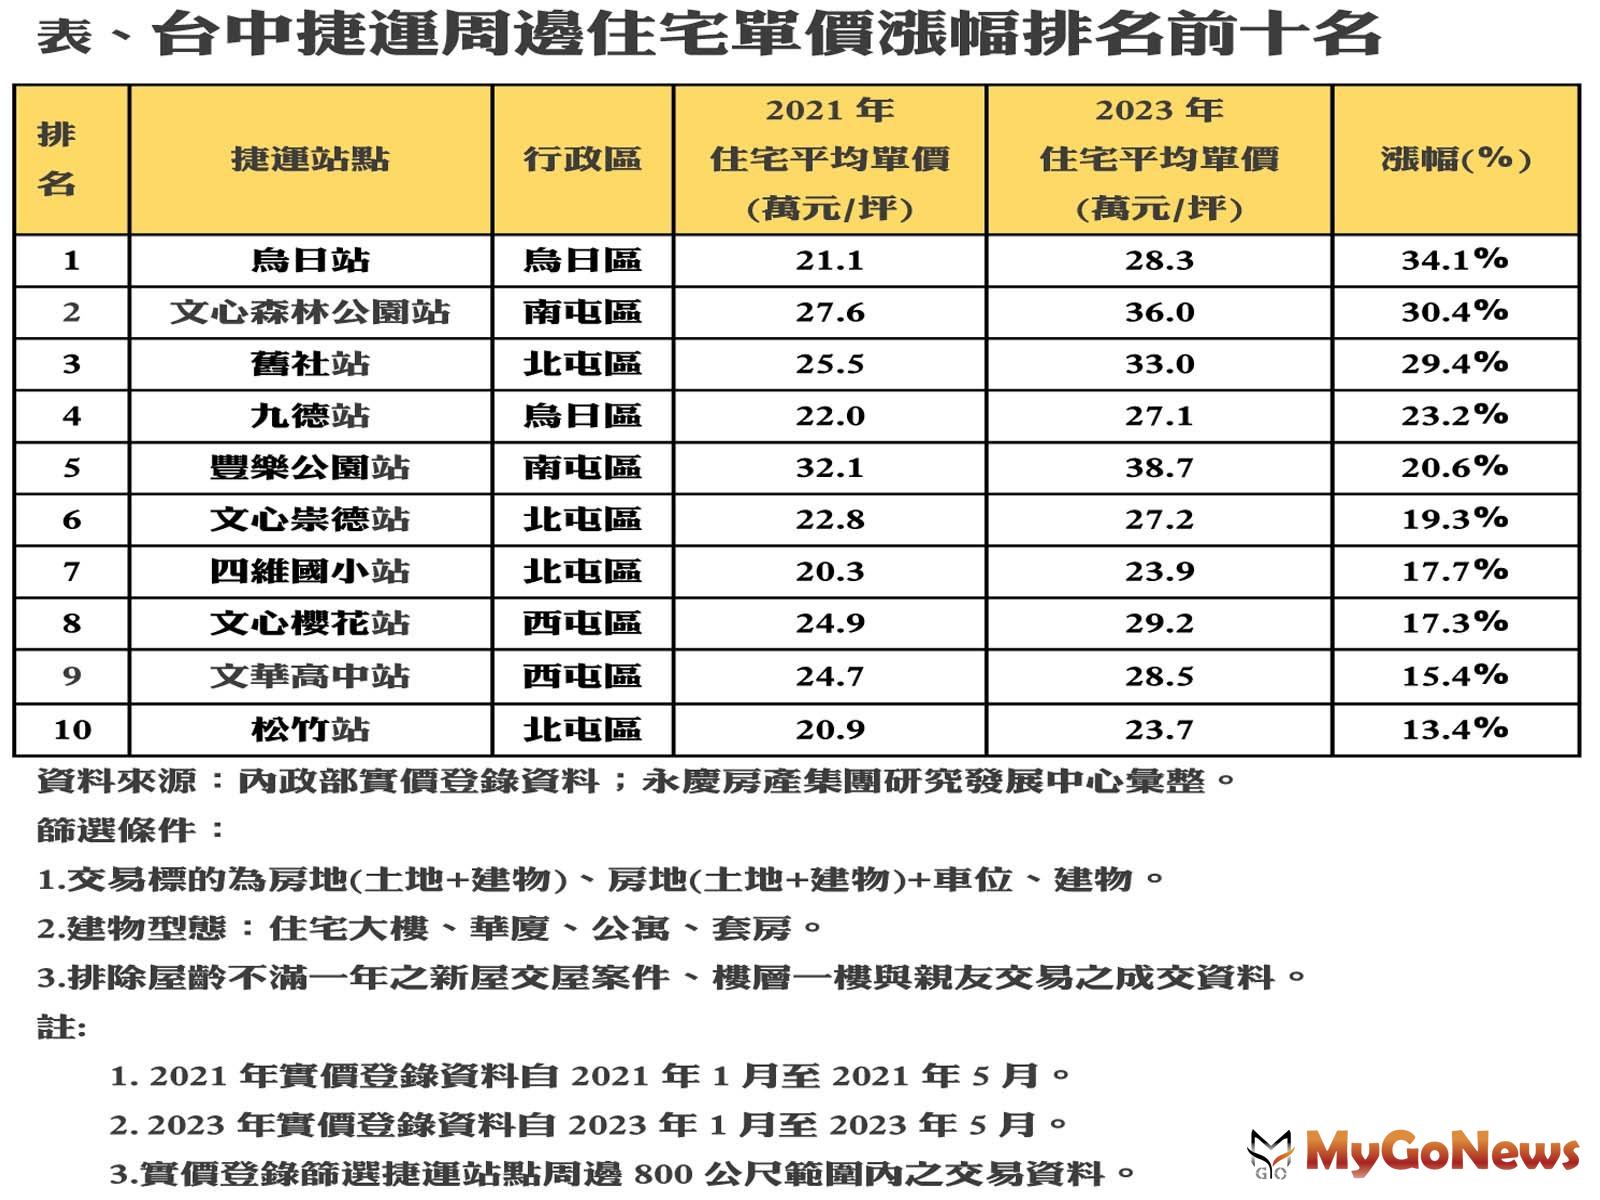 台中捷運周邊住宅單價漲幅排名前十名 MyGoNews房地產新聞 市場快訊